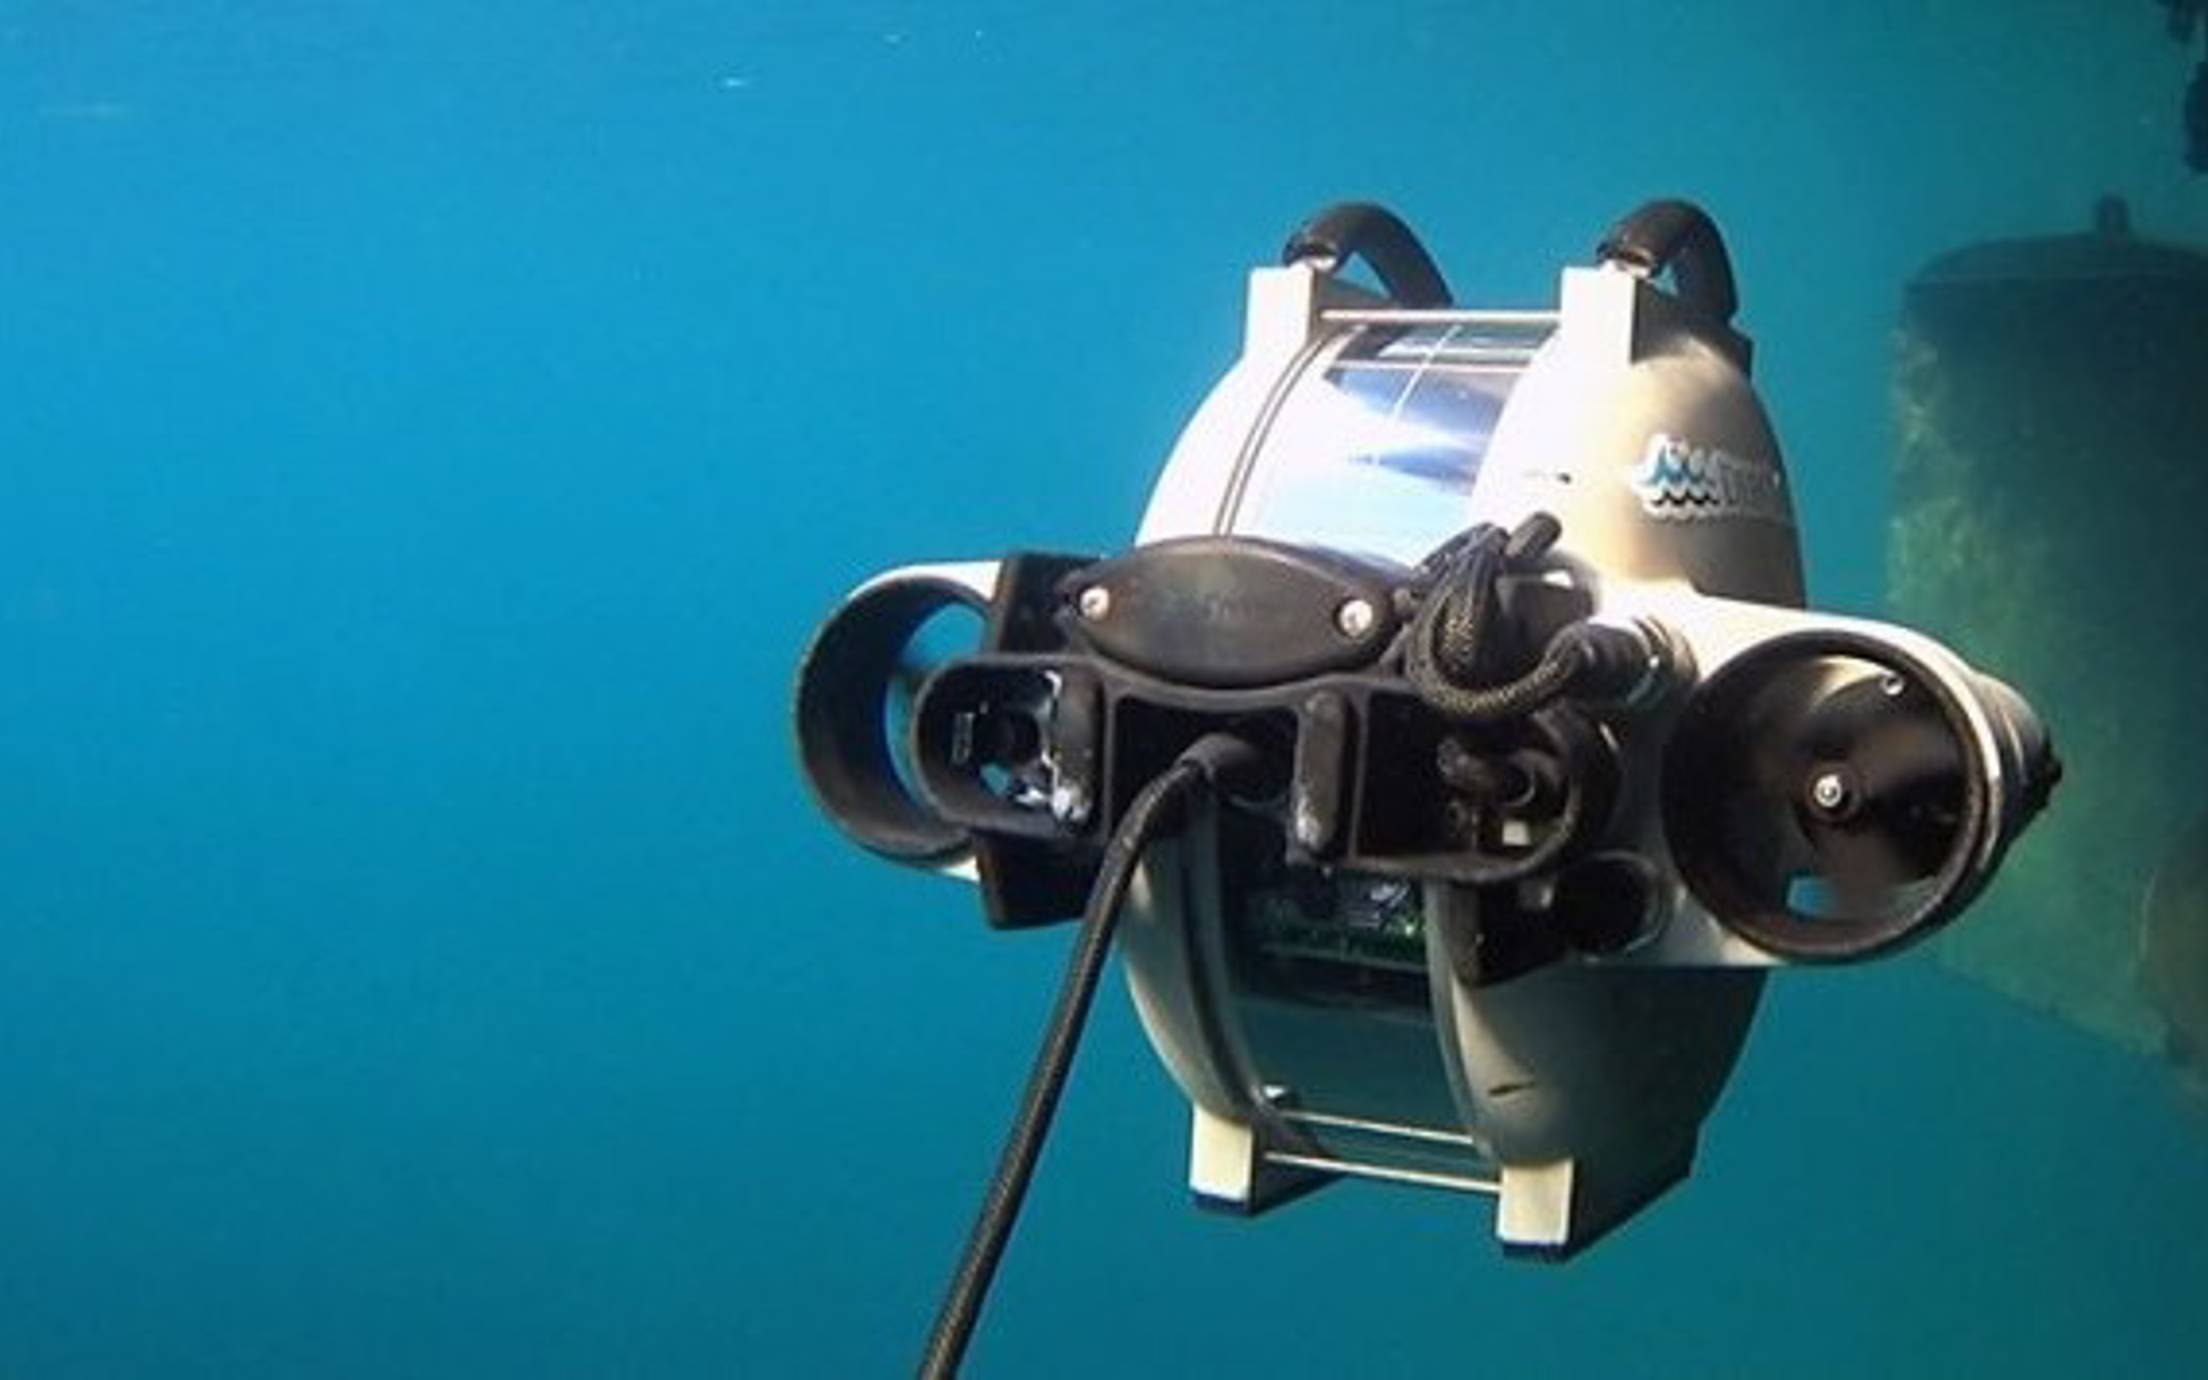 Underwater marine robot